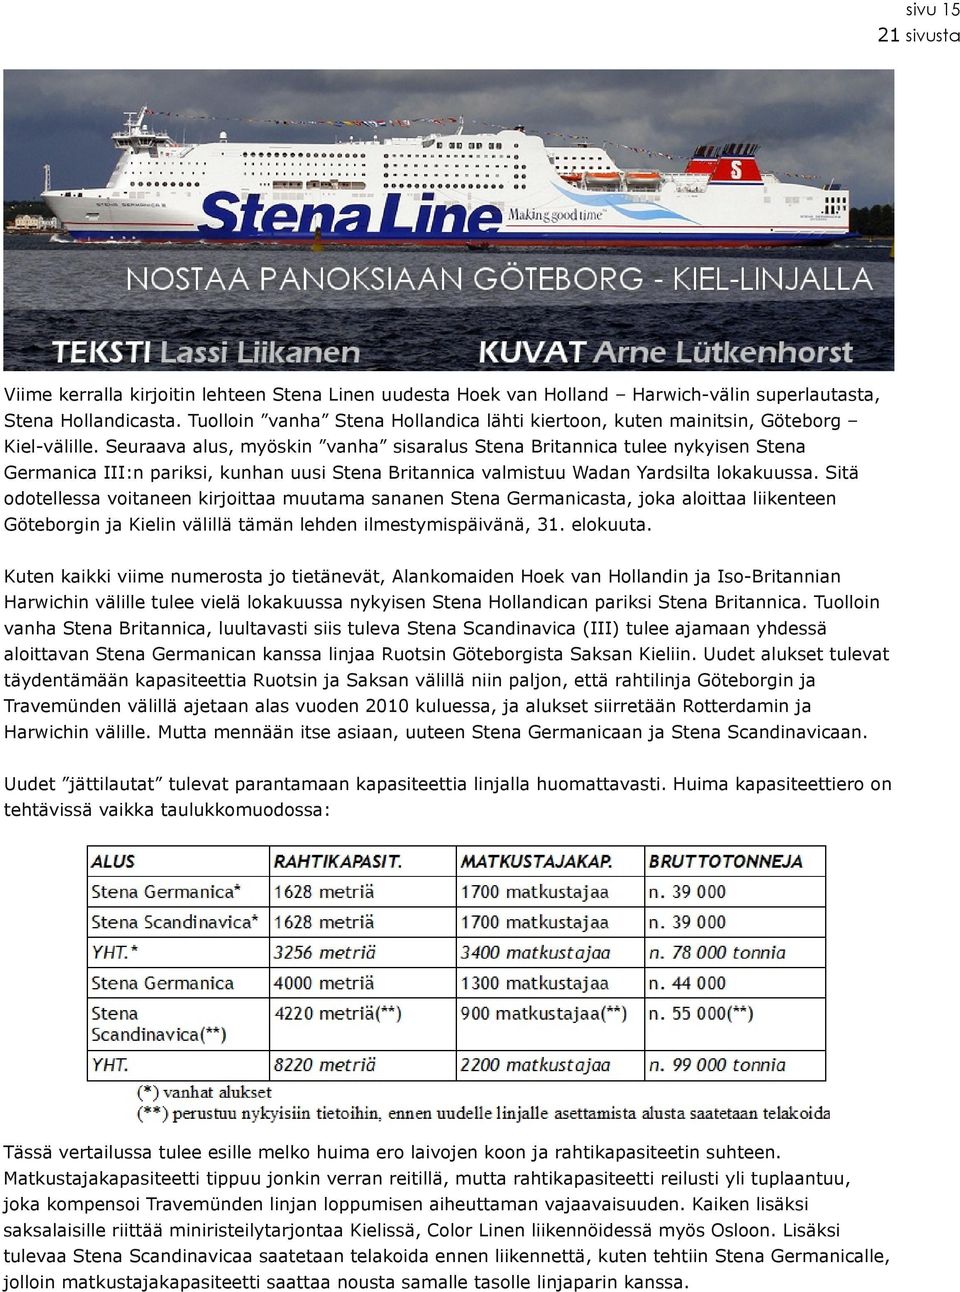 Seuraava alus, myöskin vanha sisaralus Stena Britannica tulee nykyisen Stena Germanica III:n pariksi, kunhan uusi Stena Britannica valmistuu Wadan Yardsilta lokakuussa.